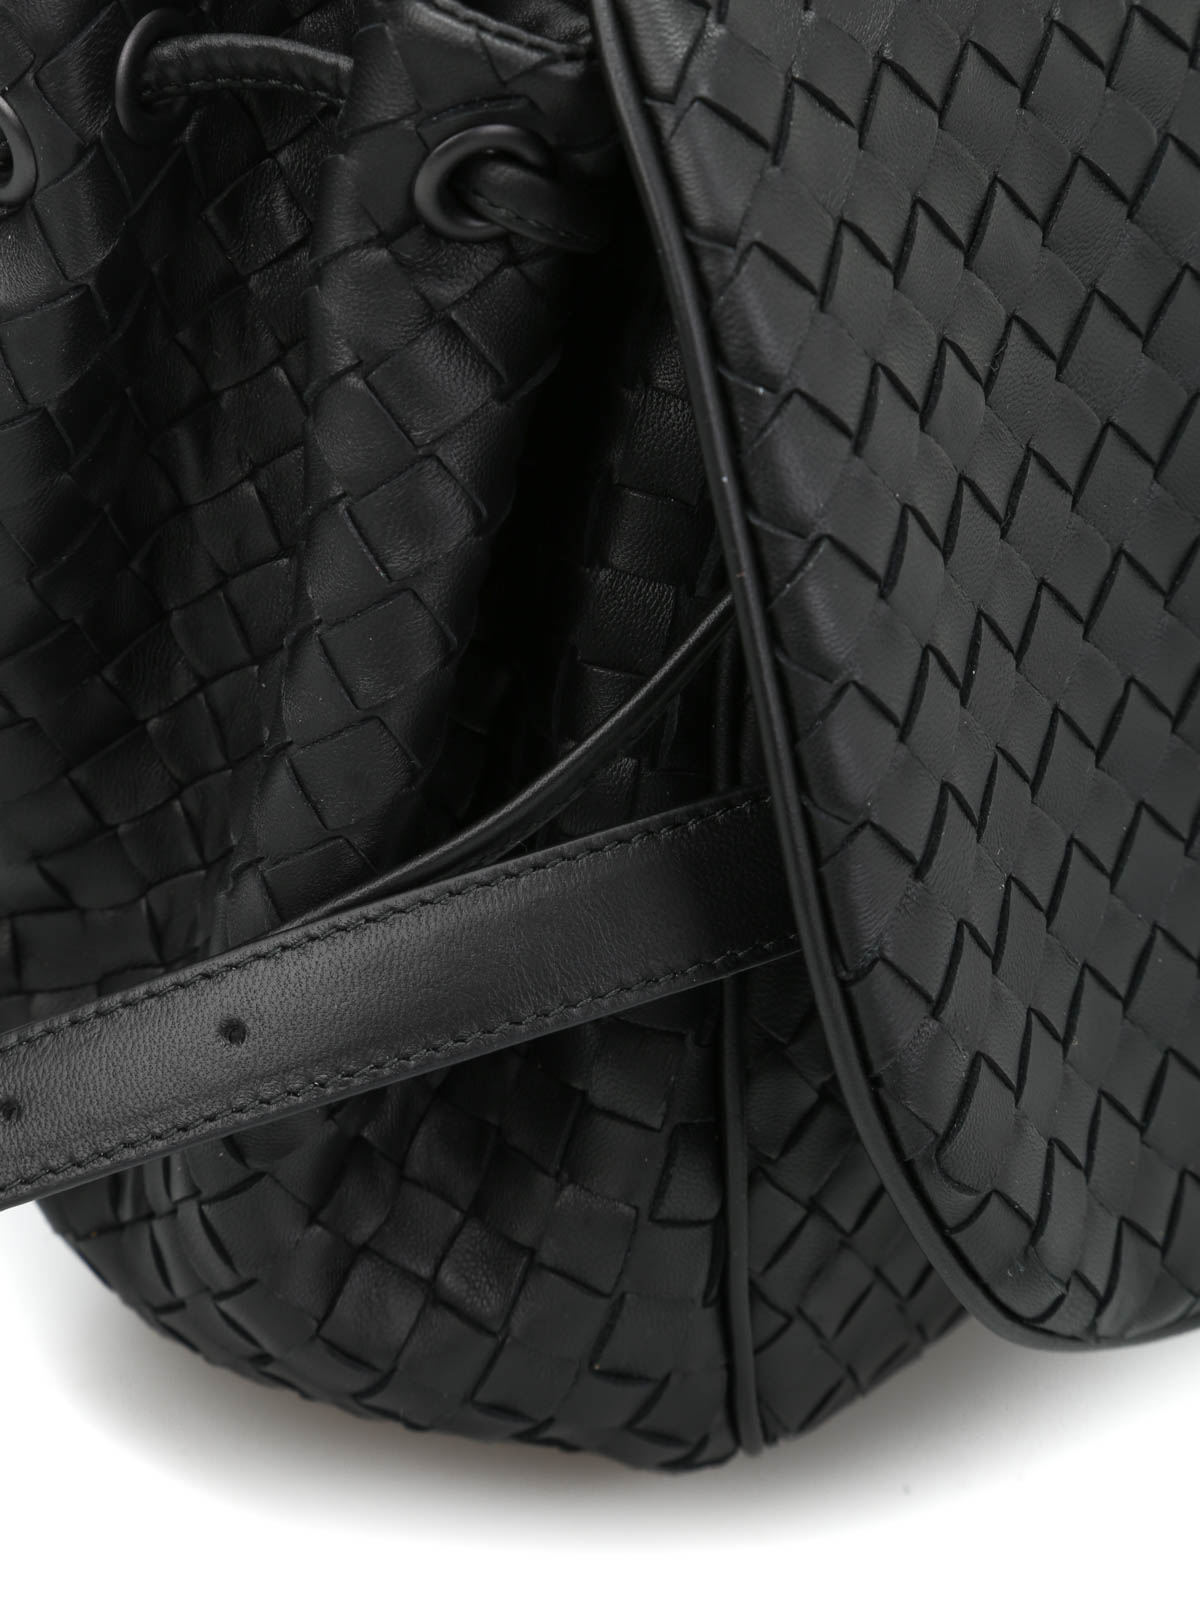 Intrecciato Leather Crossbody Bag in Black - Bottega Veneta